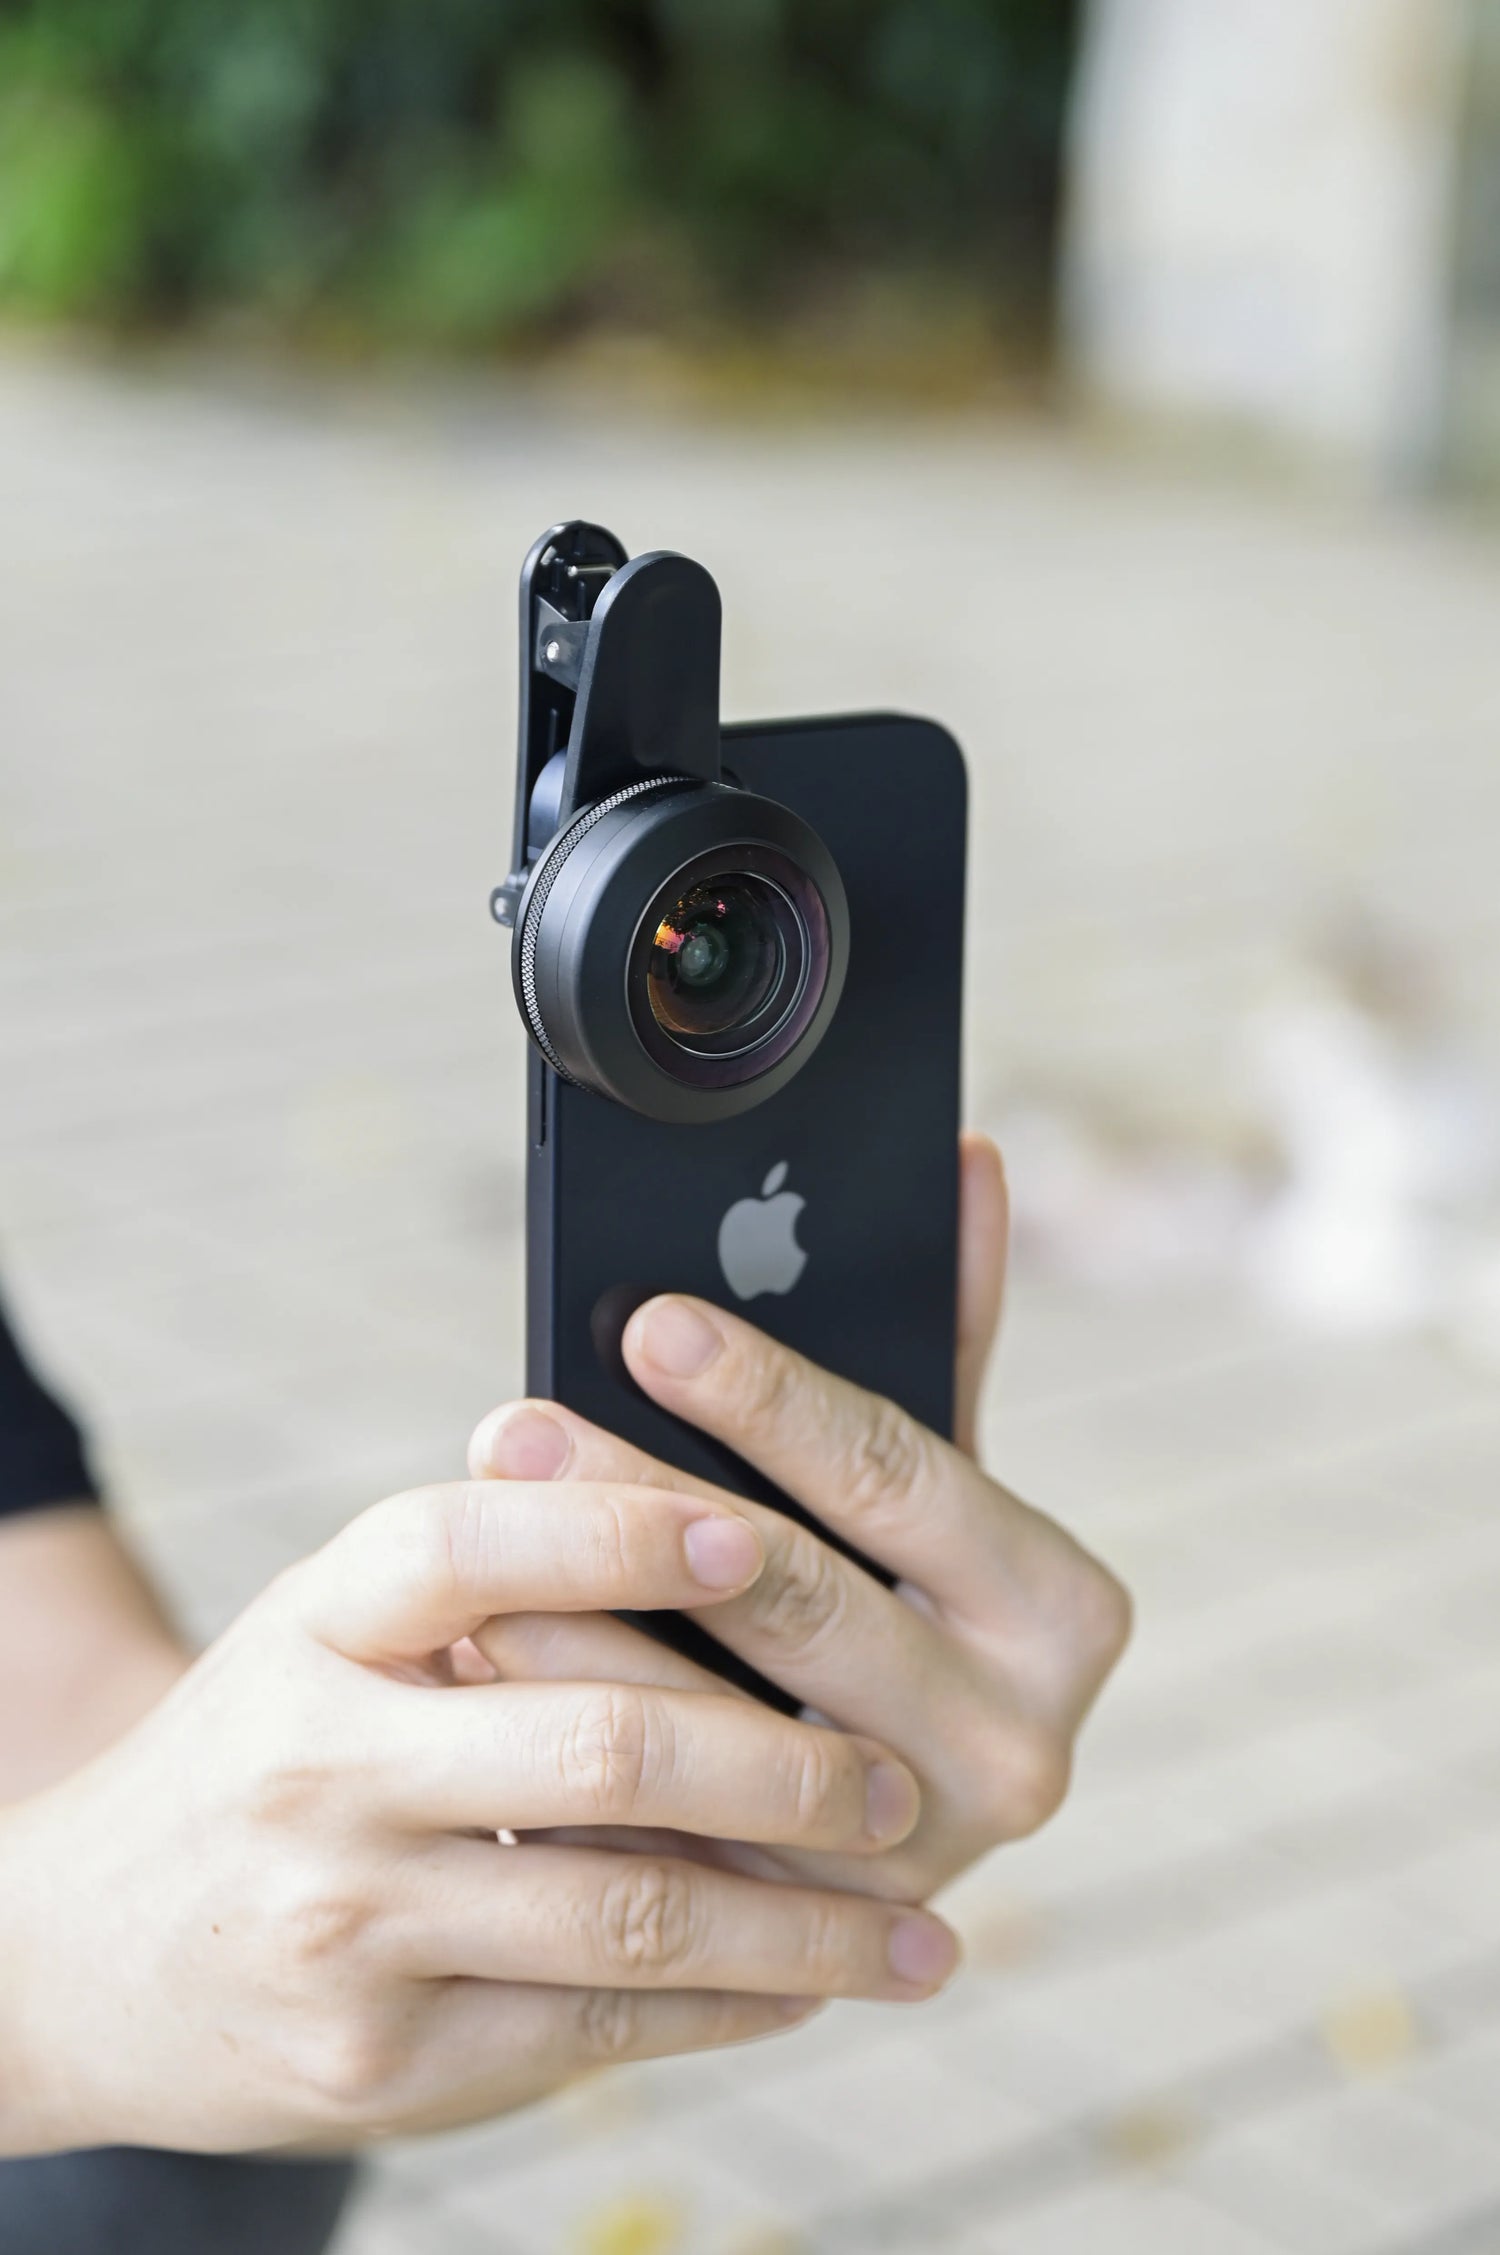 [New] Kase 200° Super Fisheye Lens for Cellphone Best Lenses Fisheye Wide Angle - APEXEL INDIA - Mobile Lens - Mobile Camera Lens - Cellphone Accessories - Phone Lens - Smartphone Lens